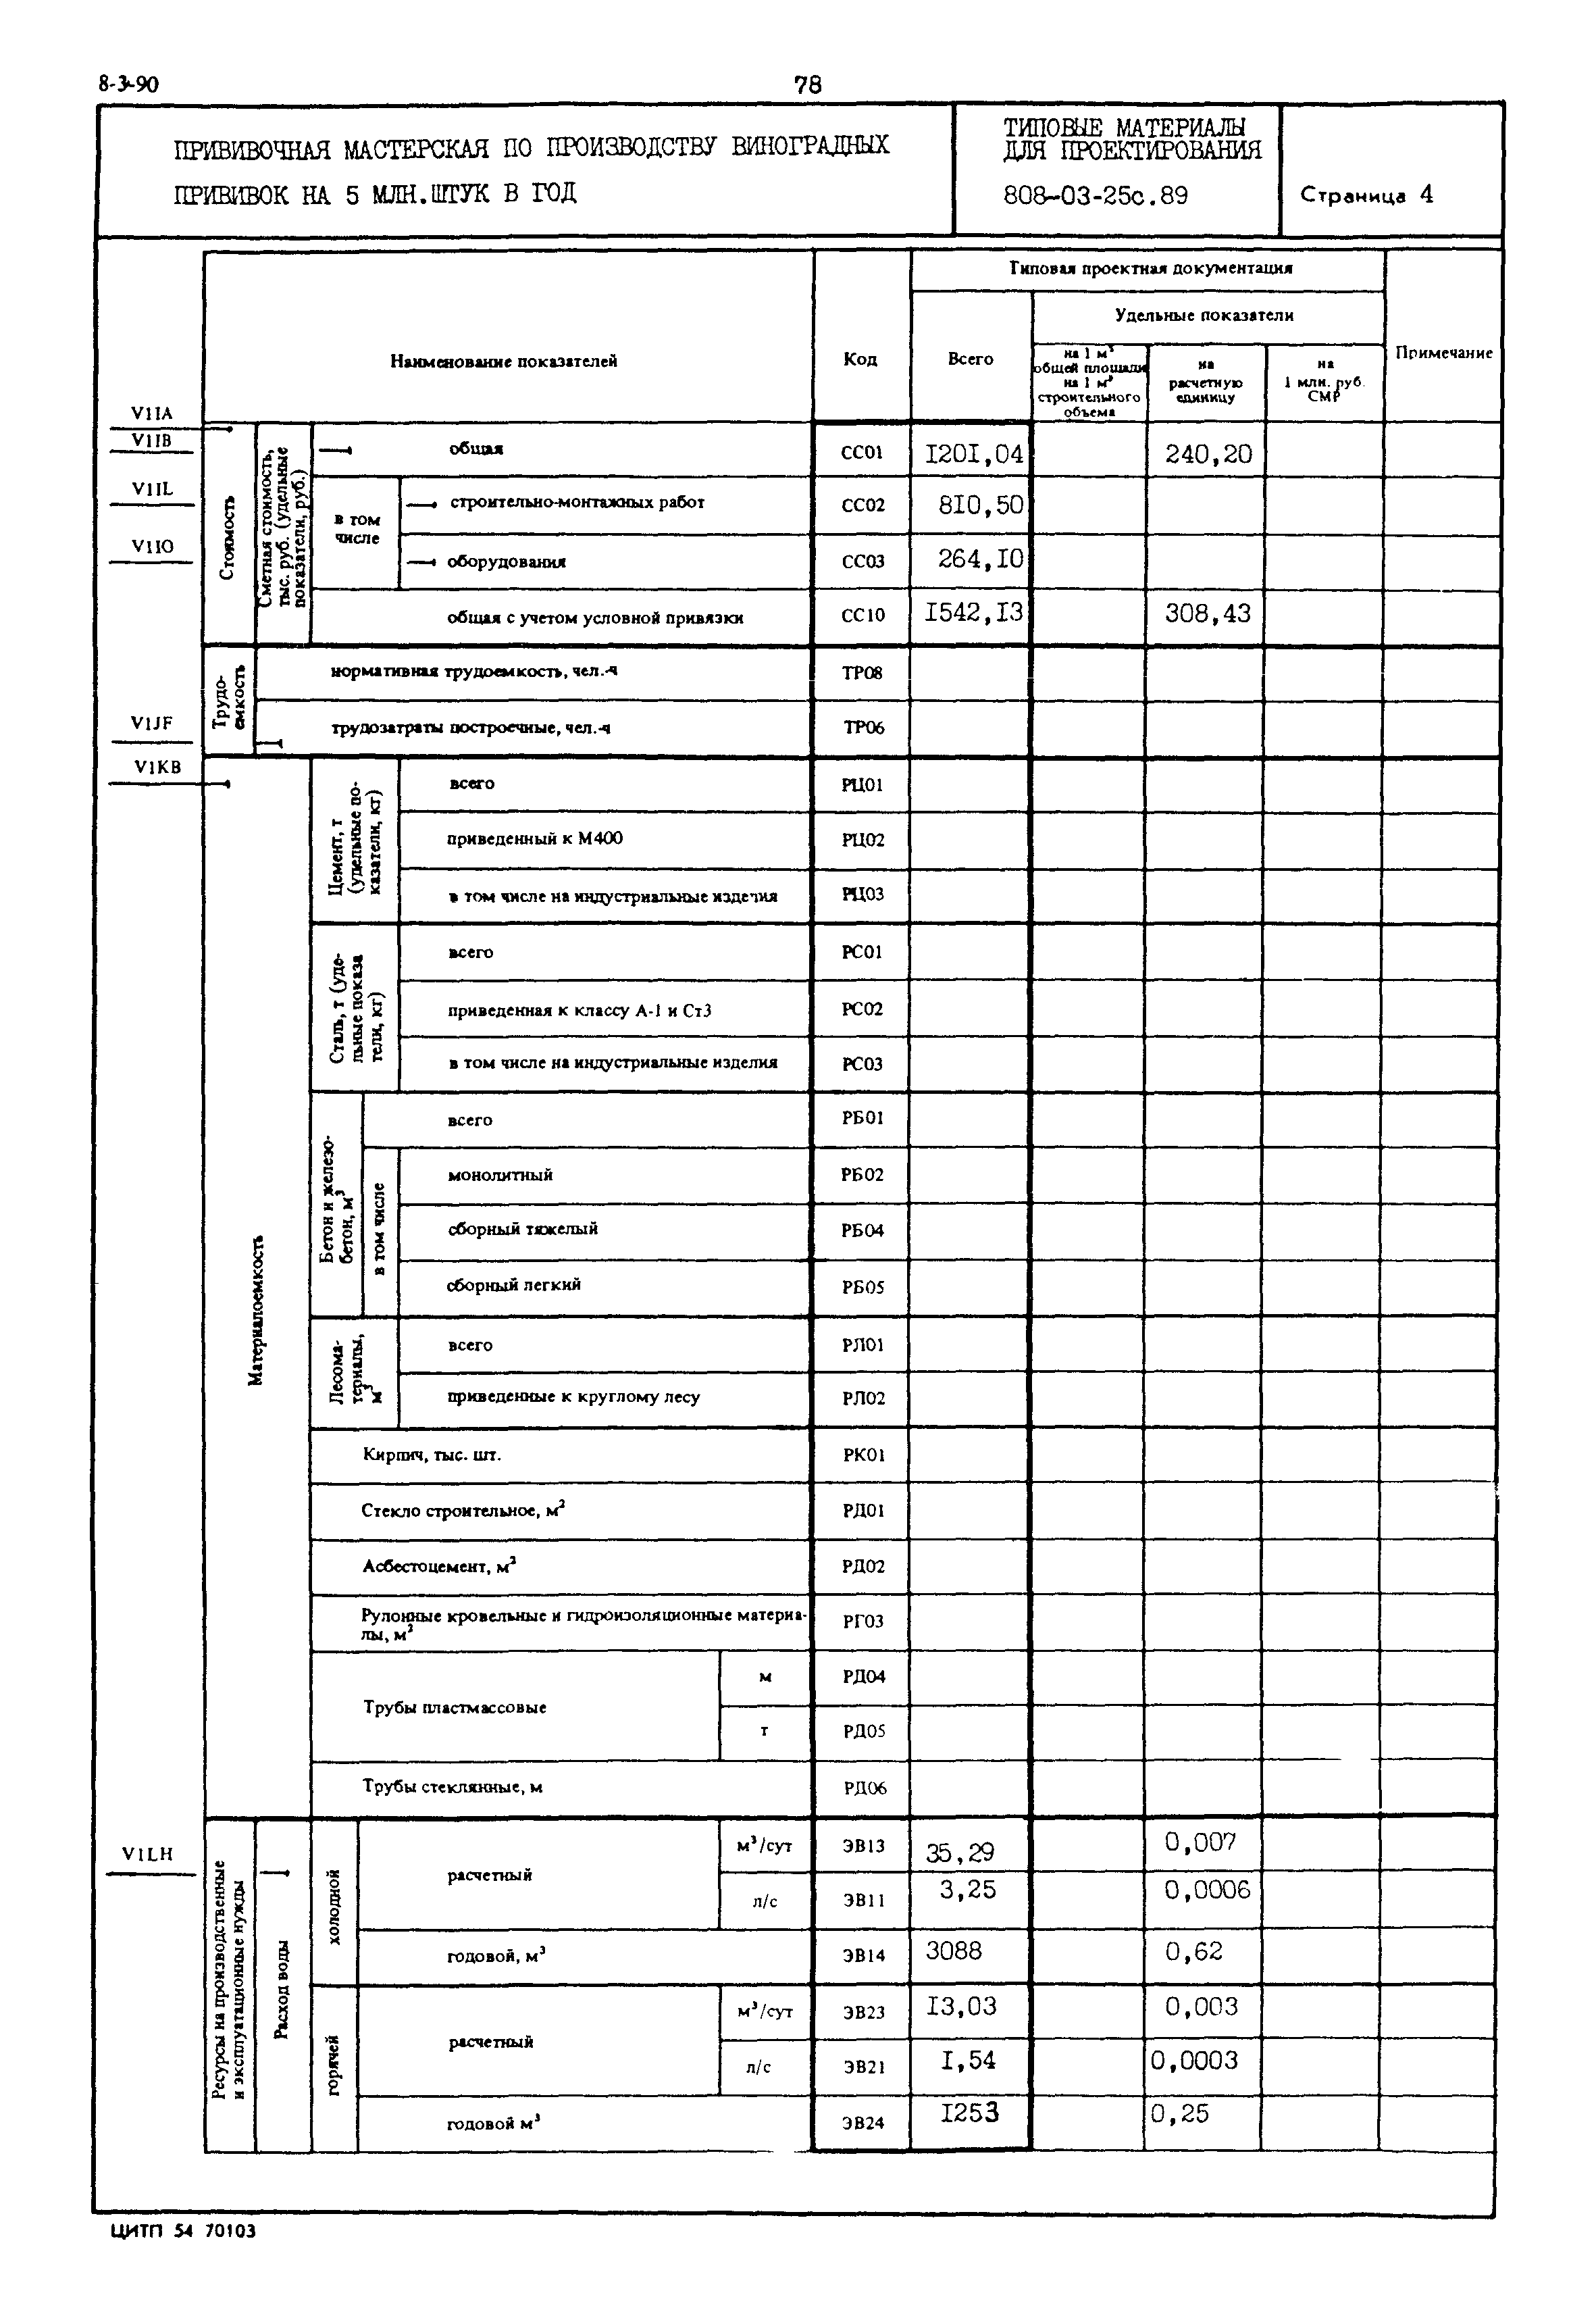 Типовые материалы для проектирования 808-03-25с.89